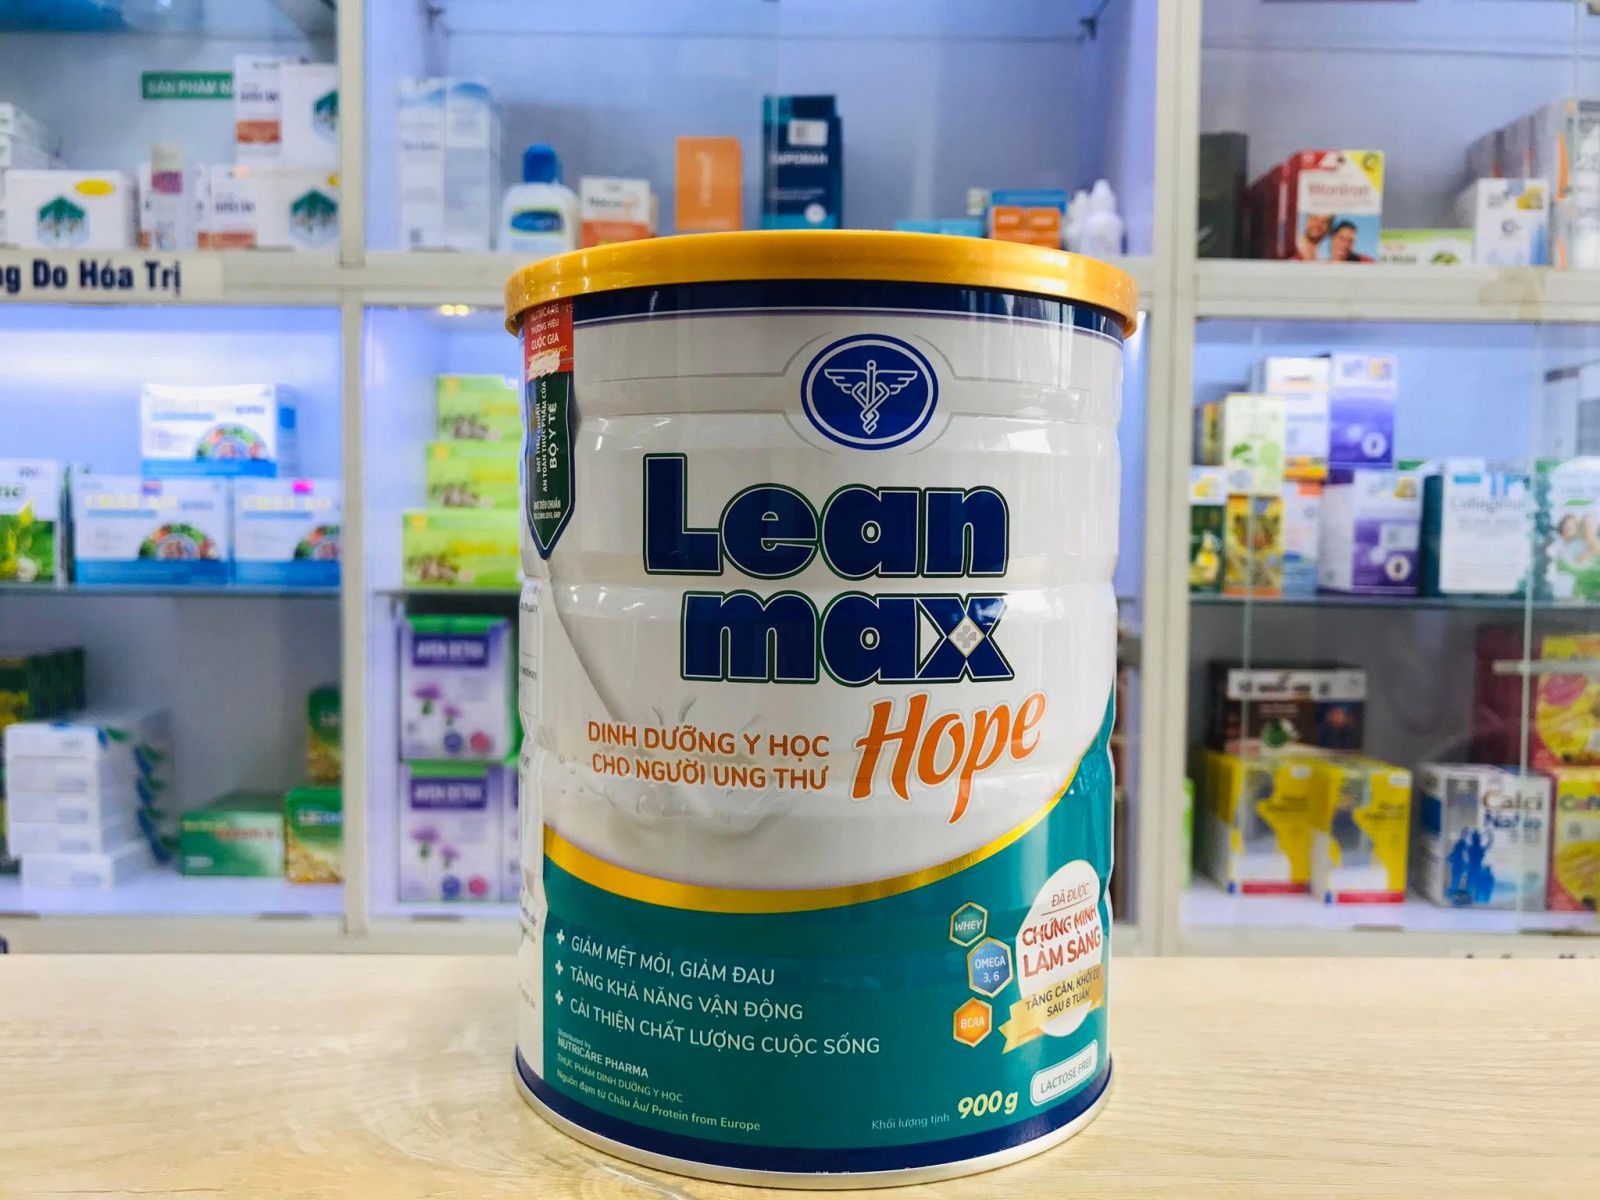 Sữa lean max hope đột phá dinh dưỡng y học cho người bệnh ung thư